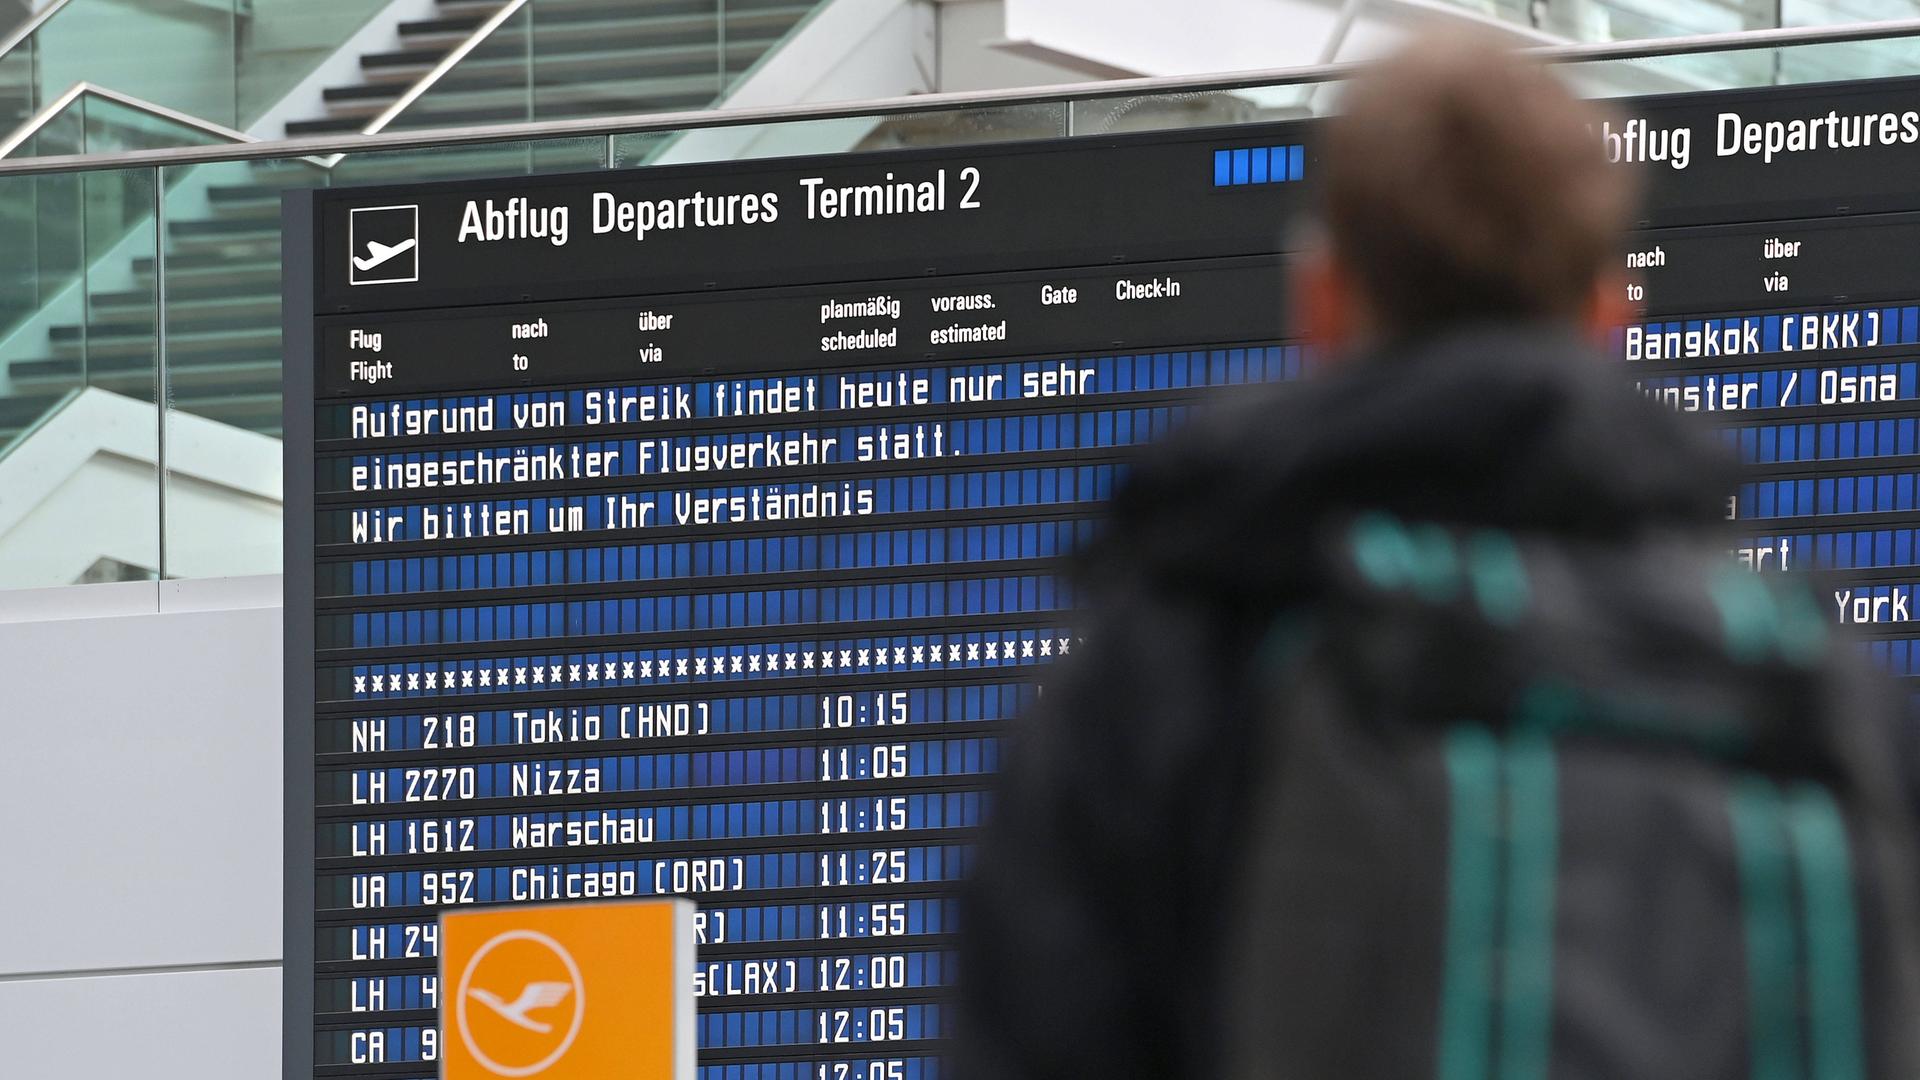 Auf einer Anzeigetafel am Münchner Flughafen steht: "Aufgrund von Streik findet heute nur sehr eingeschränkter Flugverkehr statt. Wir bitten um Verständnis."